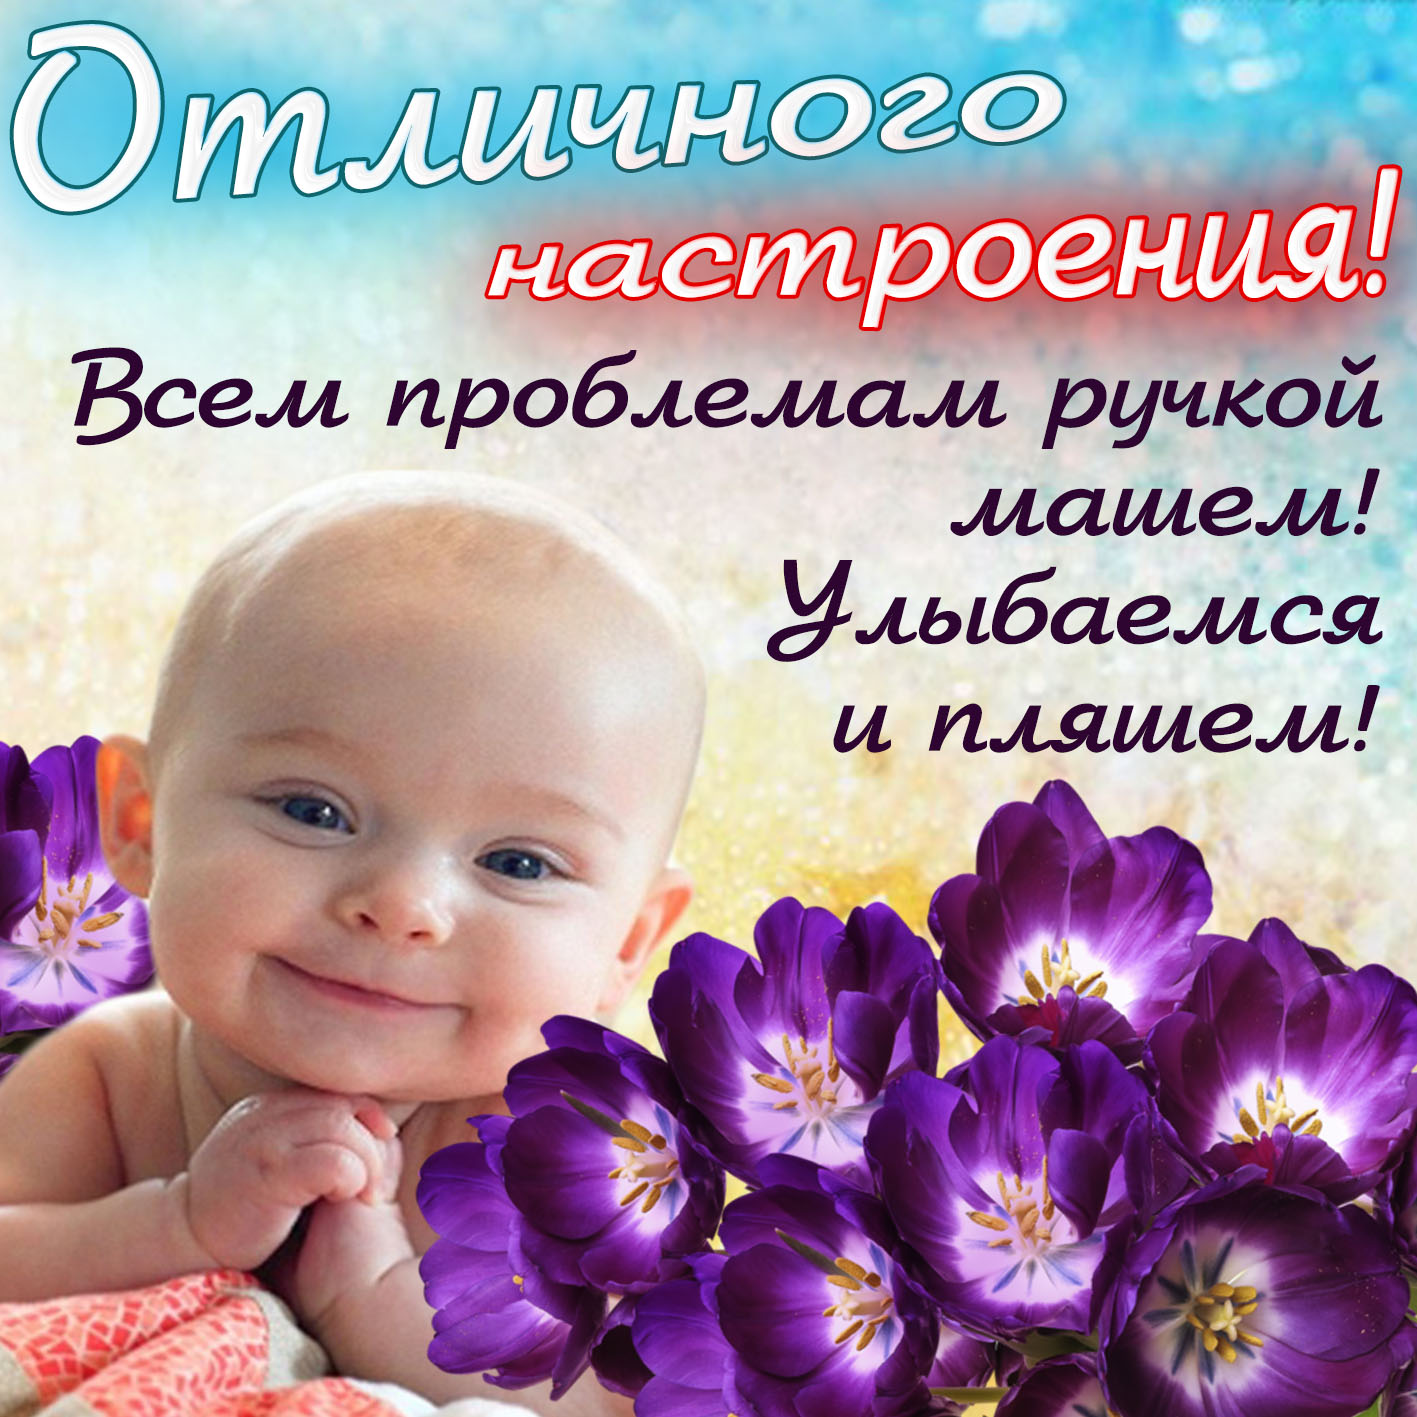 Картинка отличного настроения с малышом среди цветочков